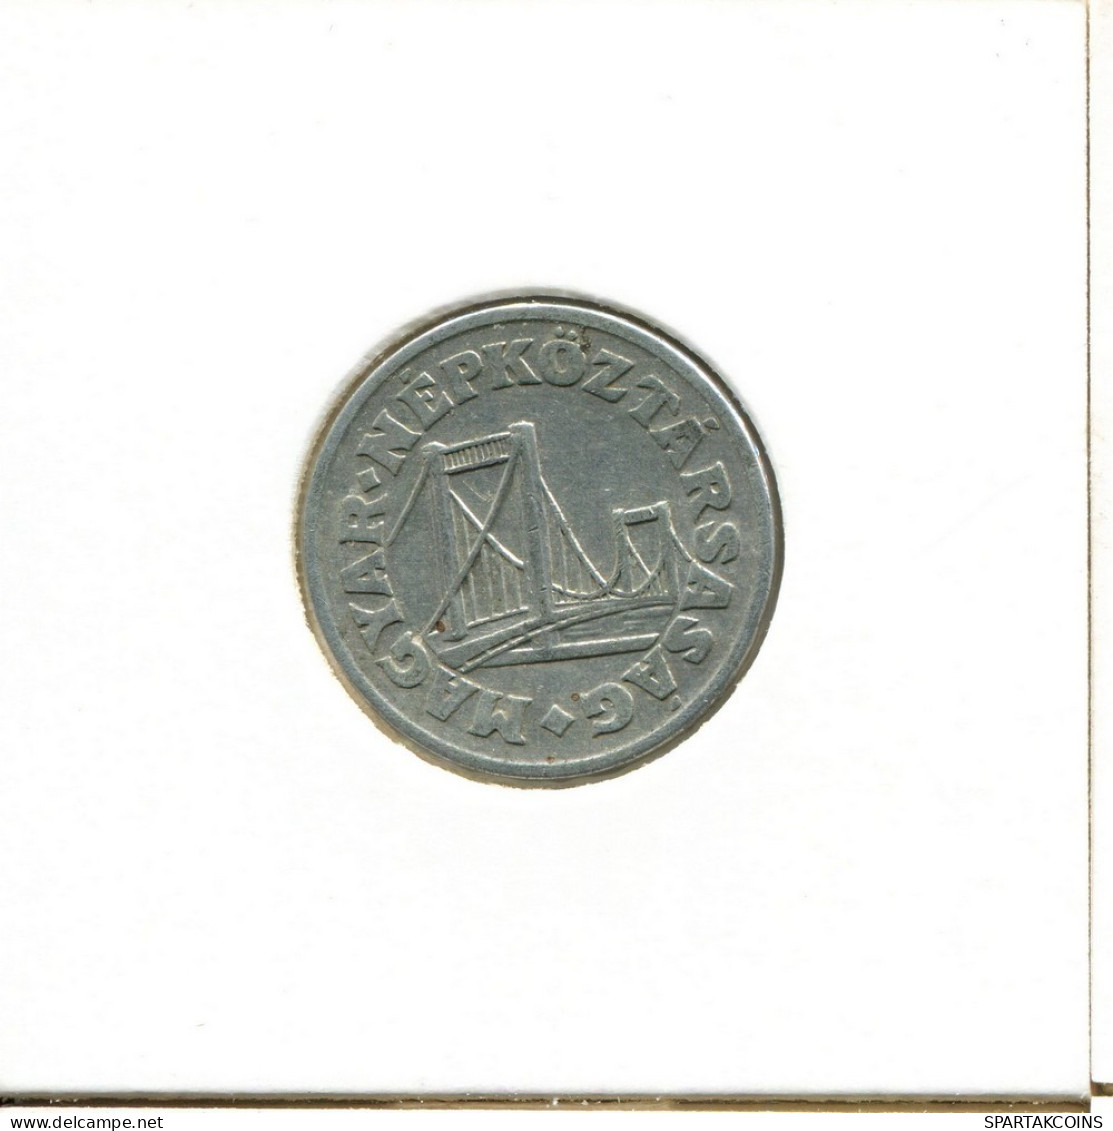 50 FILLER 1976 HUNGARY Coin #AY465.U.A - Hongrie